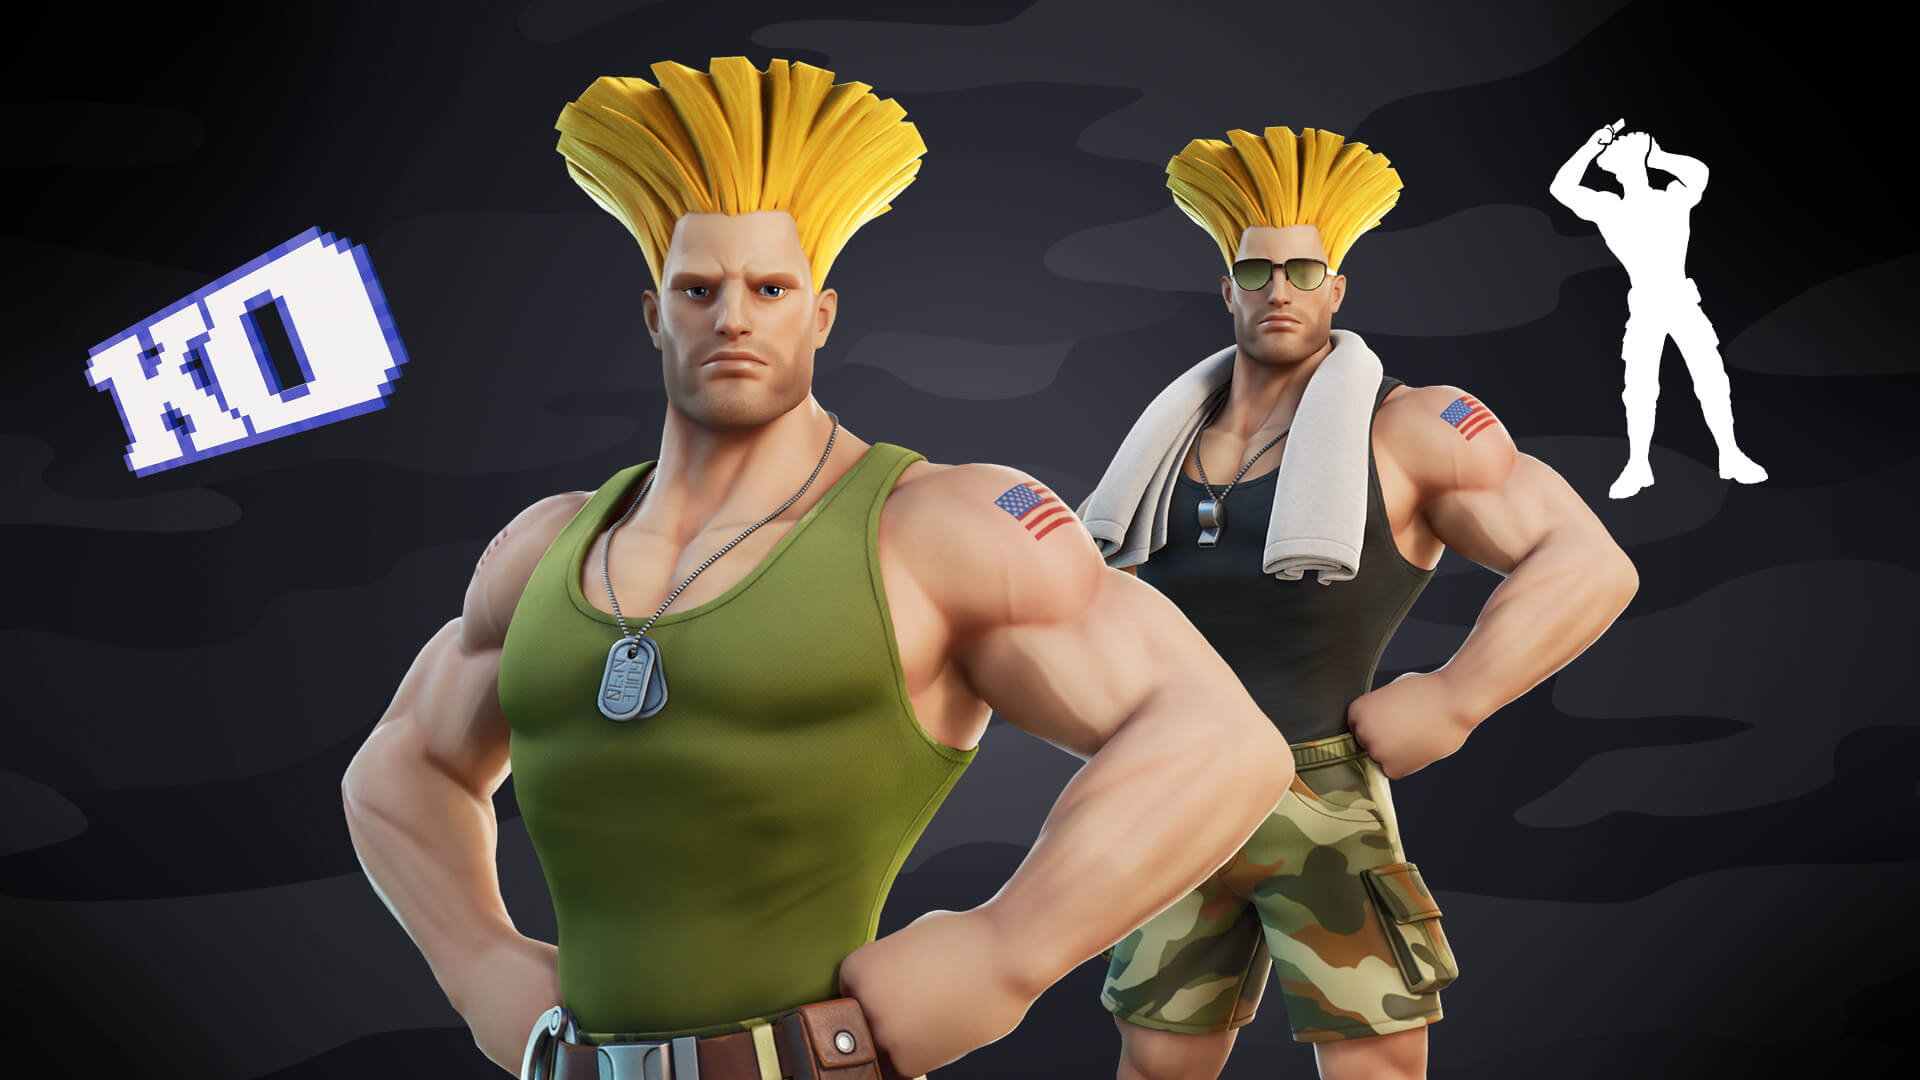 Street Fighter Cammy, Chun-Li, Ryu, and Guile Skins Return in Fortnite